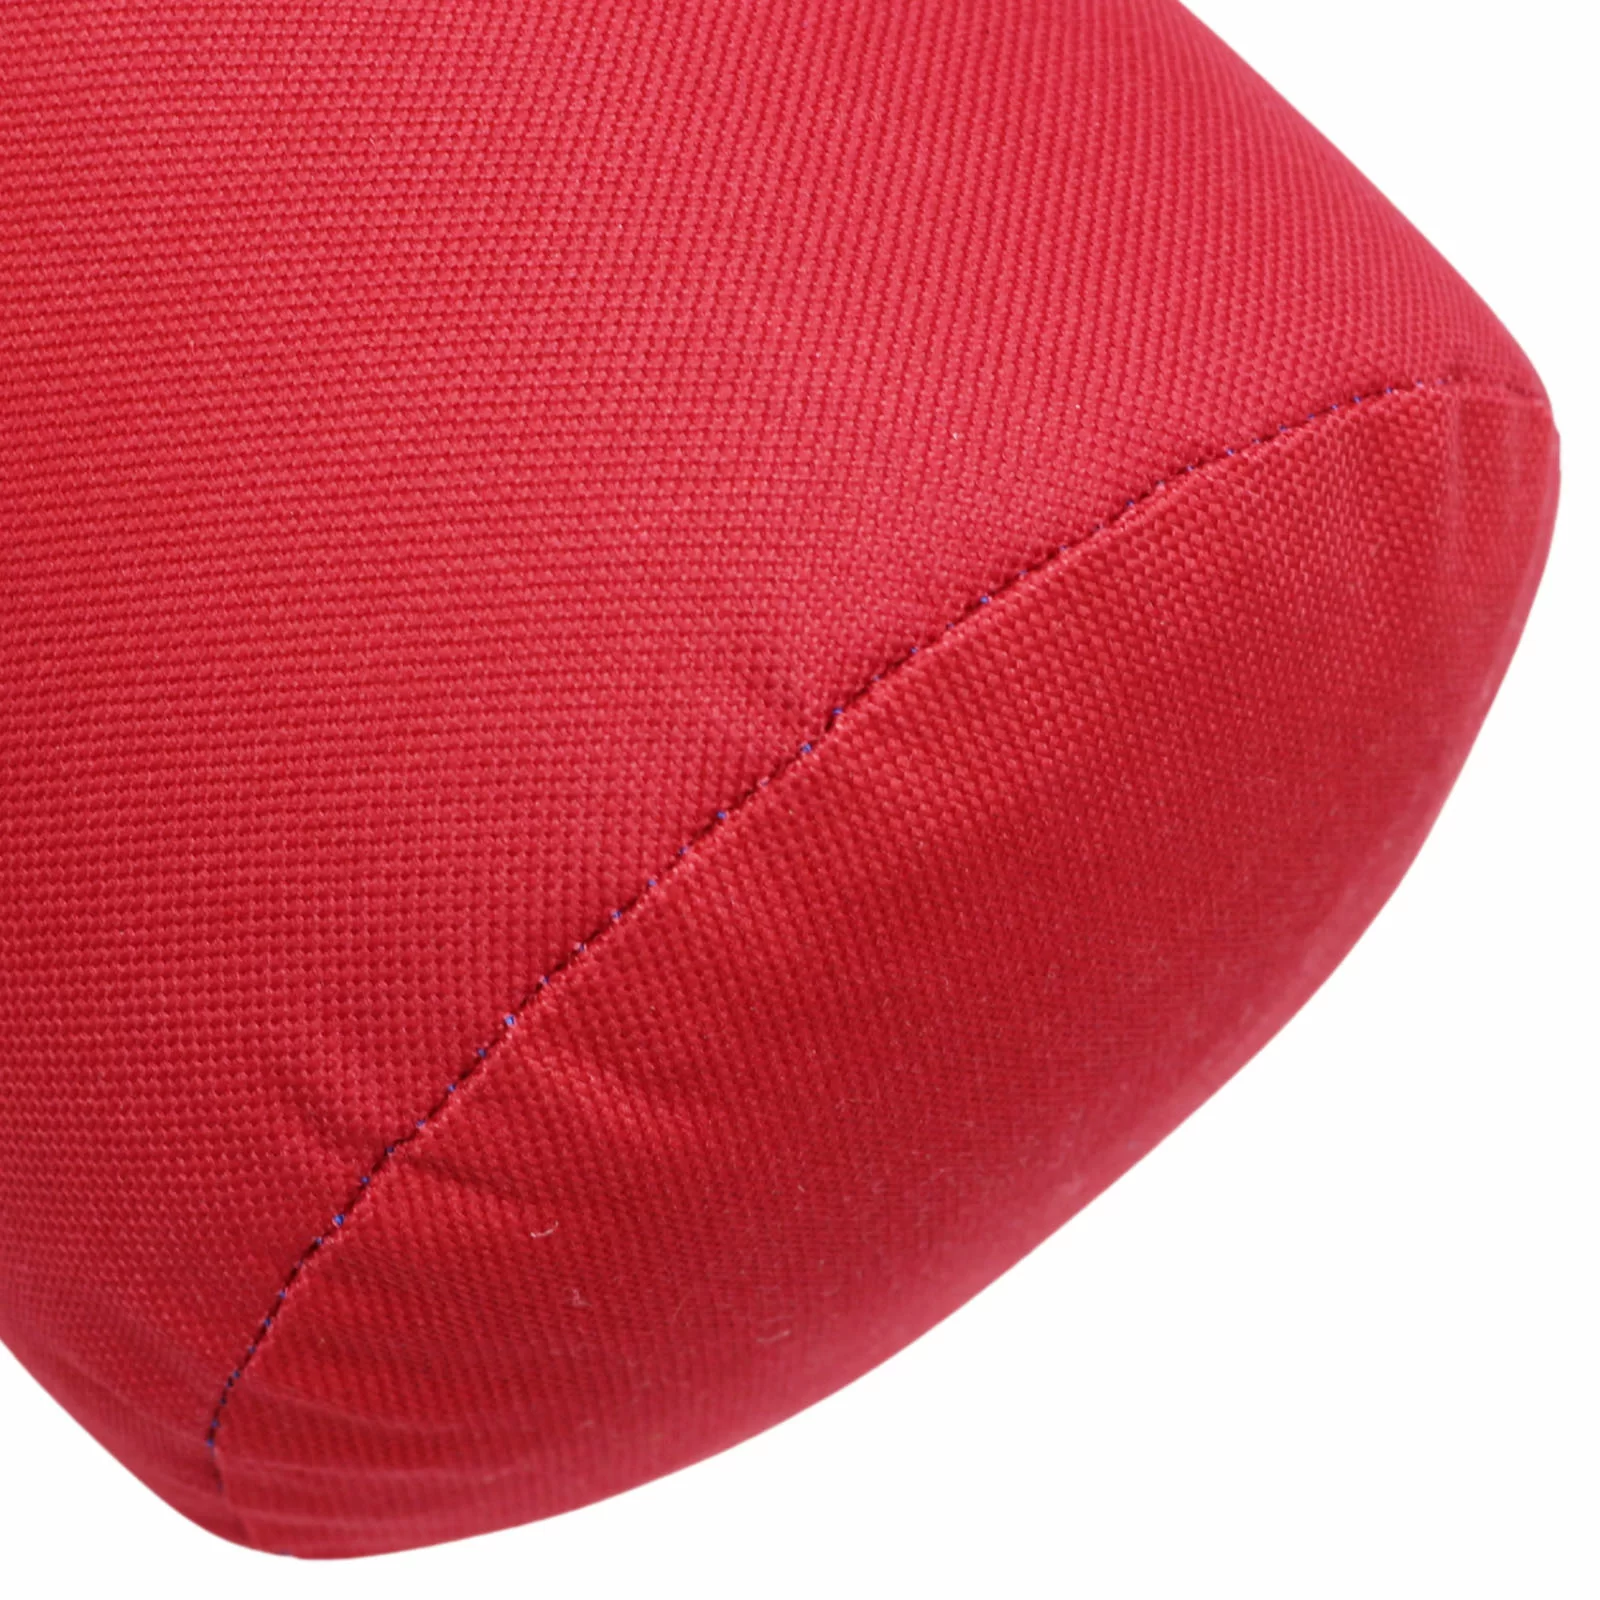 Фото Набор боксерский для начинающих RuscoSport Триколор (перчатки бокс. 6 oz) красный со склада магазина СпортСЕ